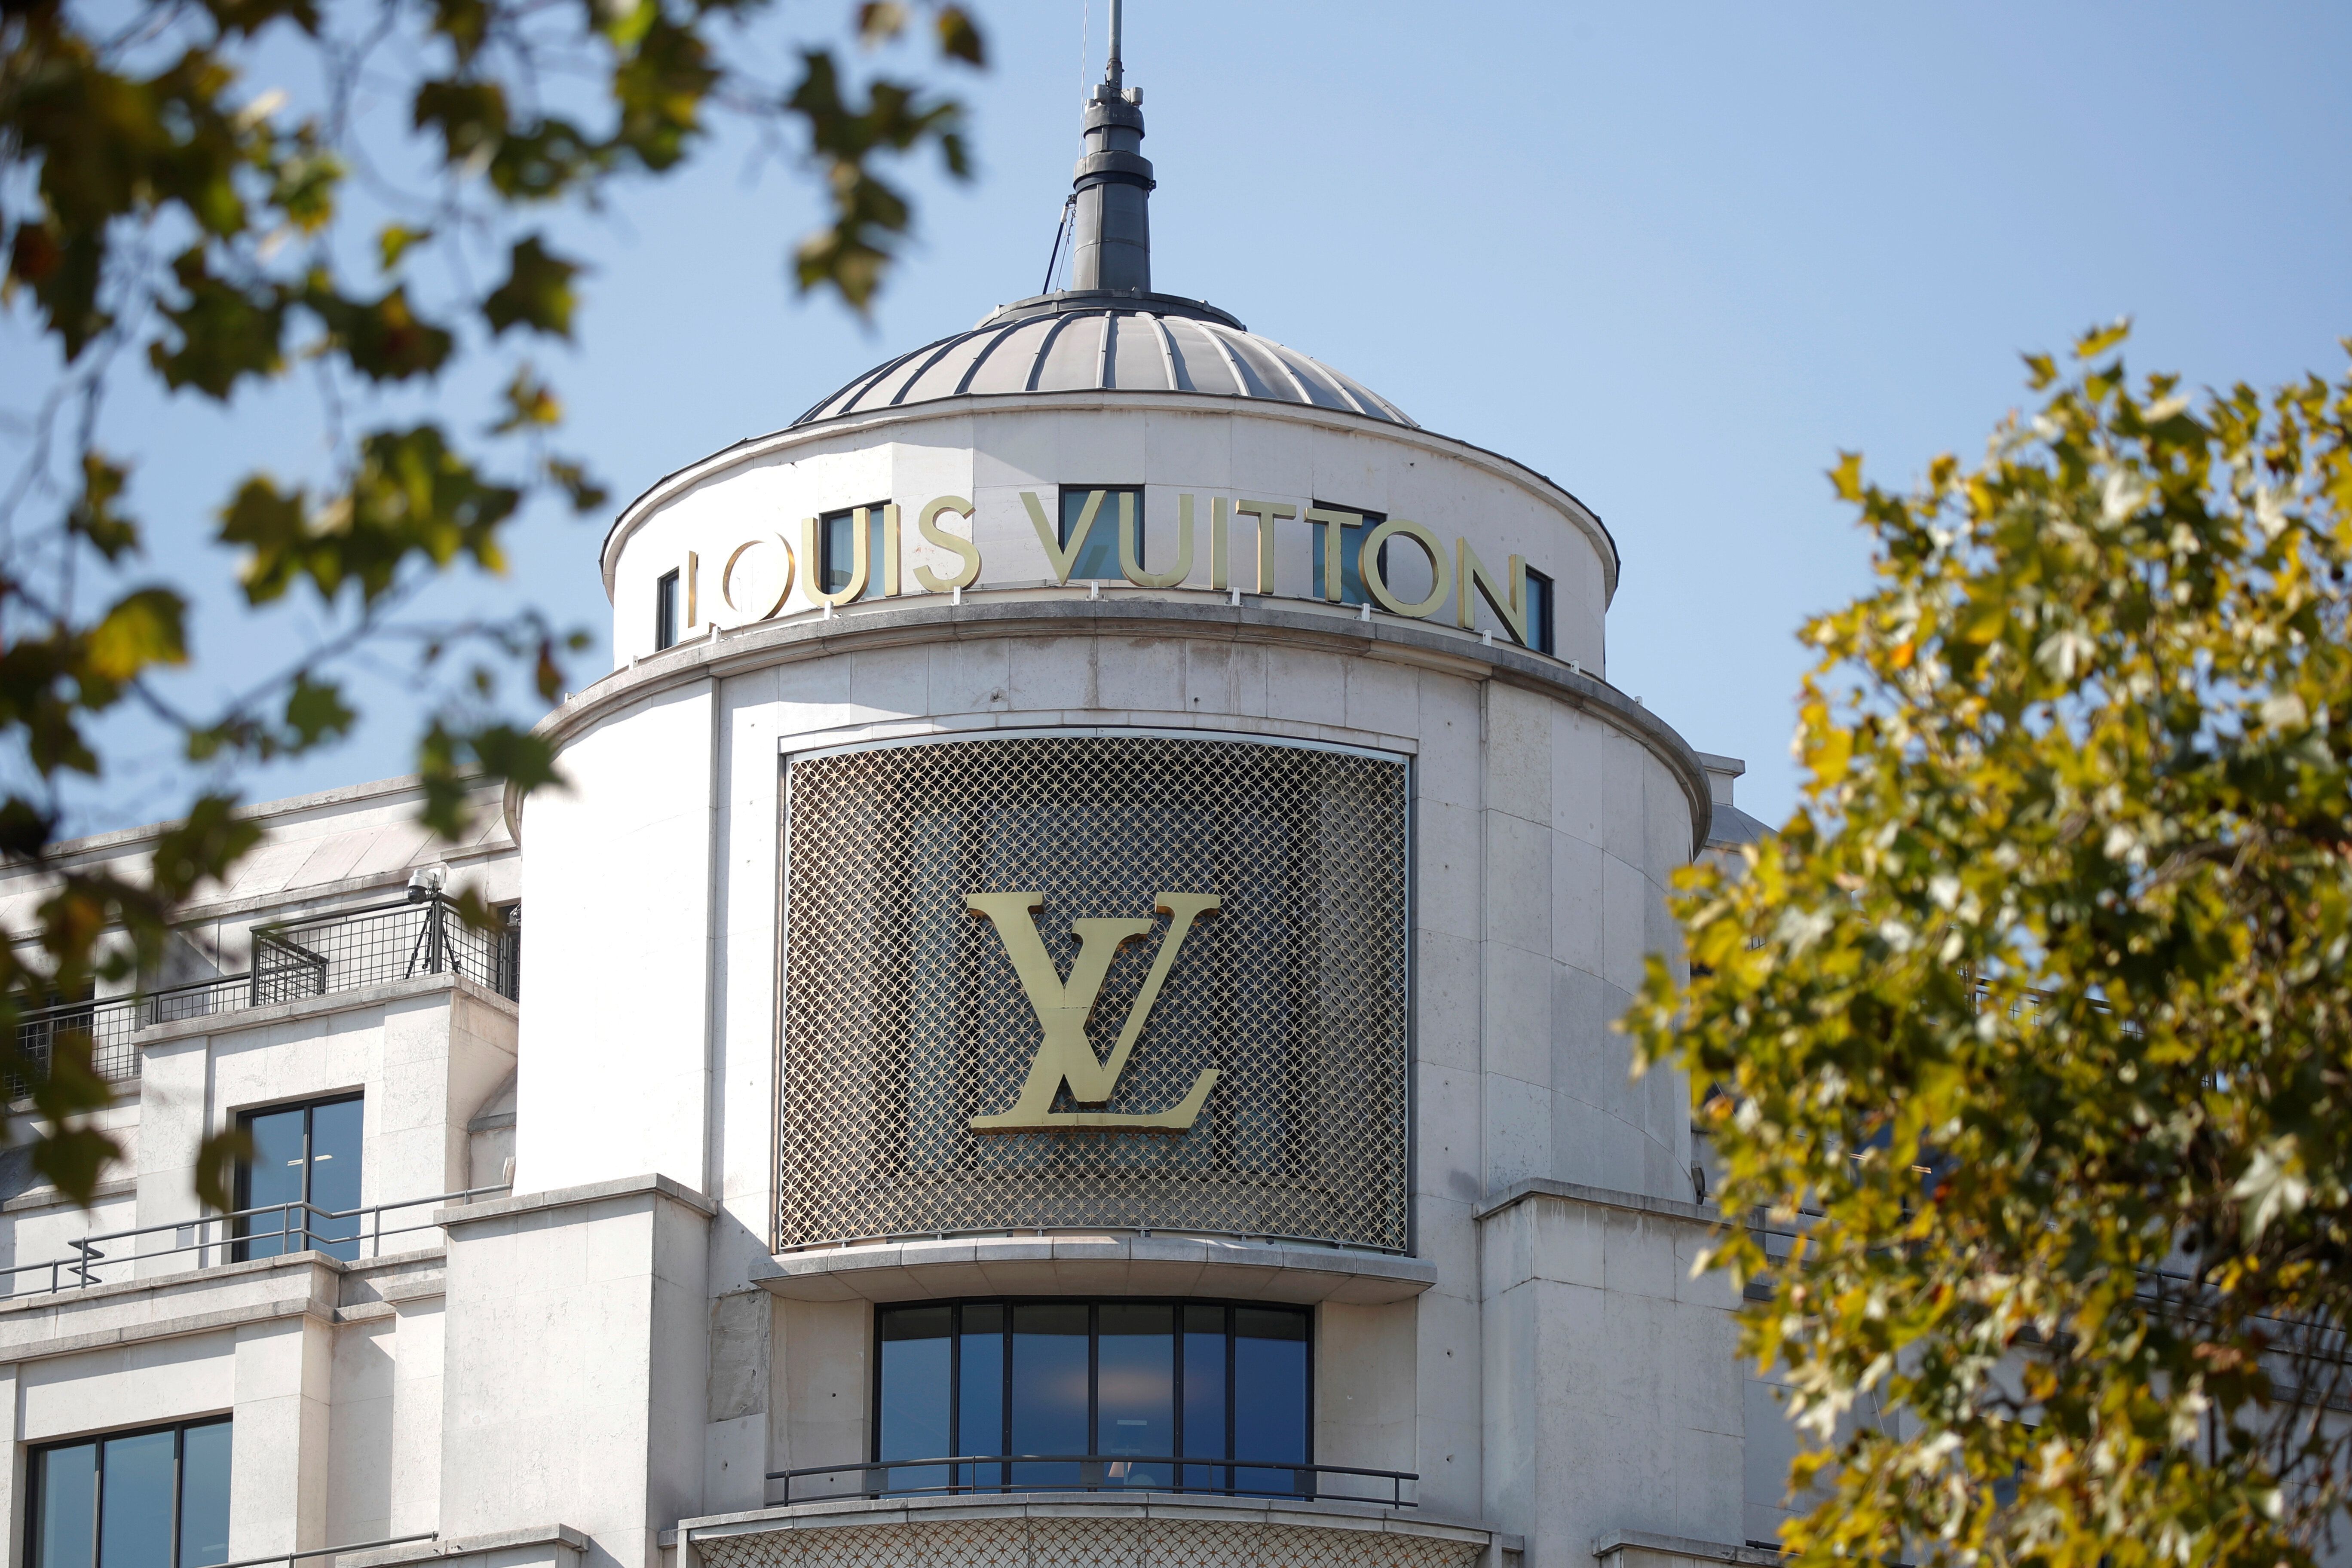 La ville de Vendôme vend son nom à Vuitton pour 10.000 euros (photo du 18 septembre 2020,...